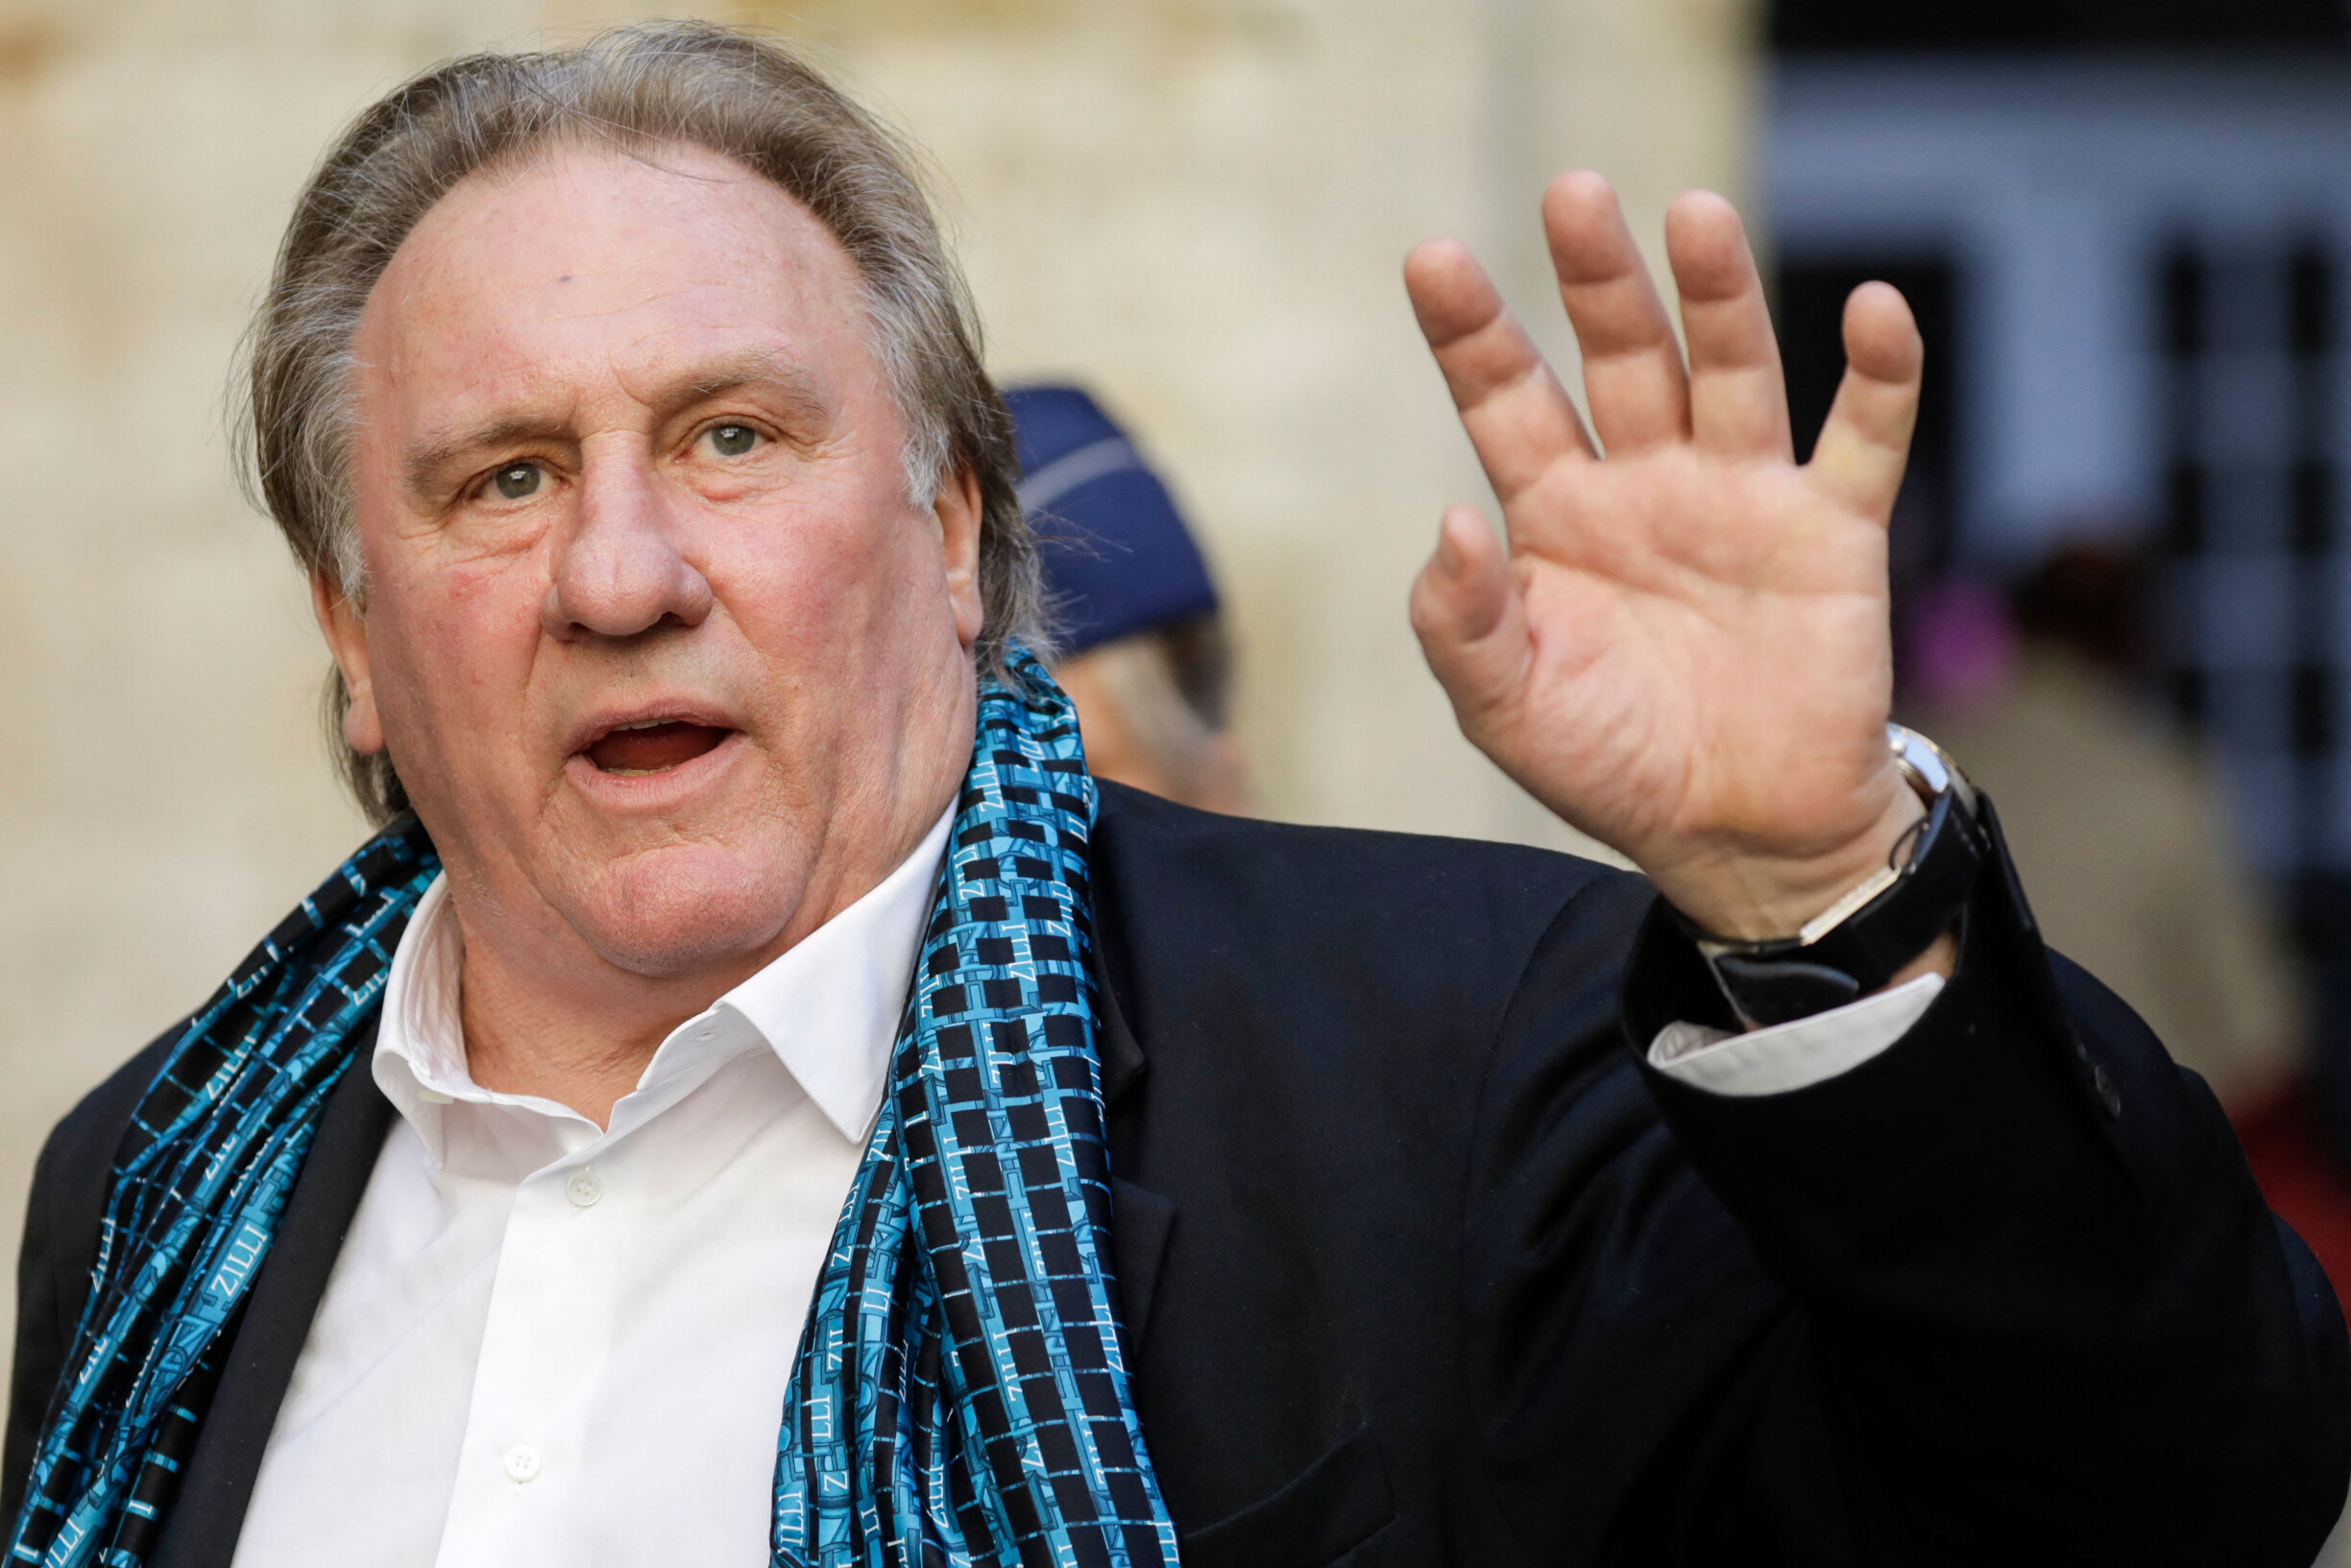 Gerard Depardieu is in police custody in Paris